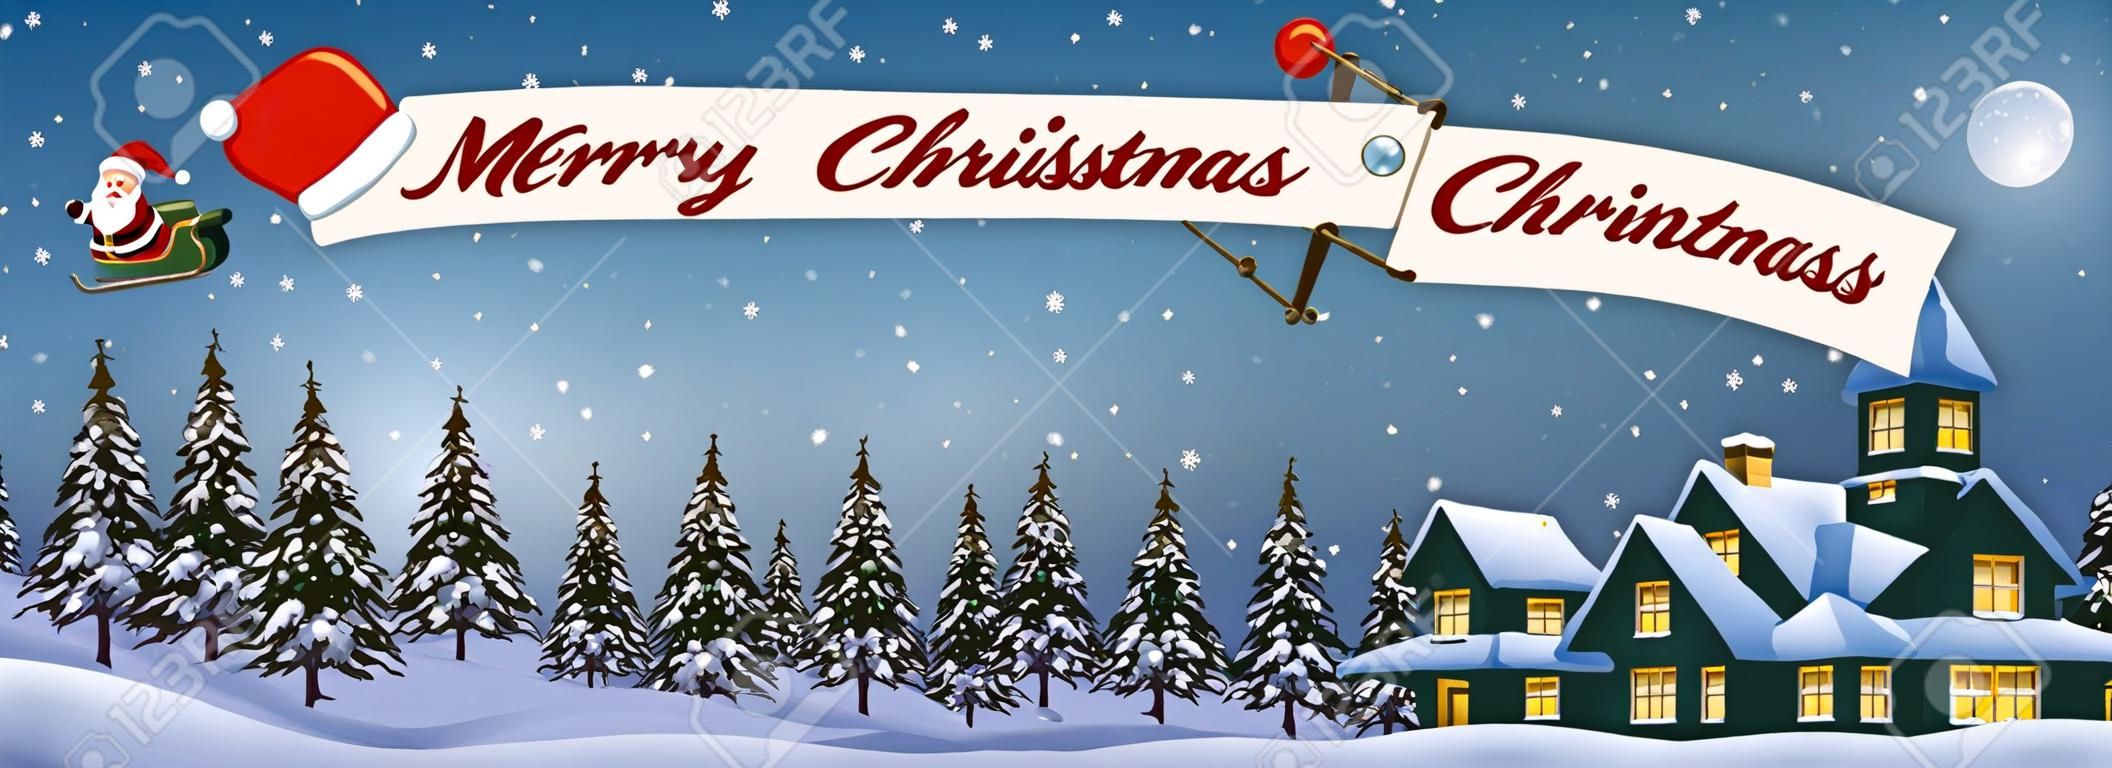 Santa claus desenho animado voando no avião com alegre mensagem de Natal banner à noite sobre xmas paisagem nevada